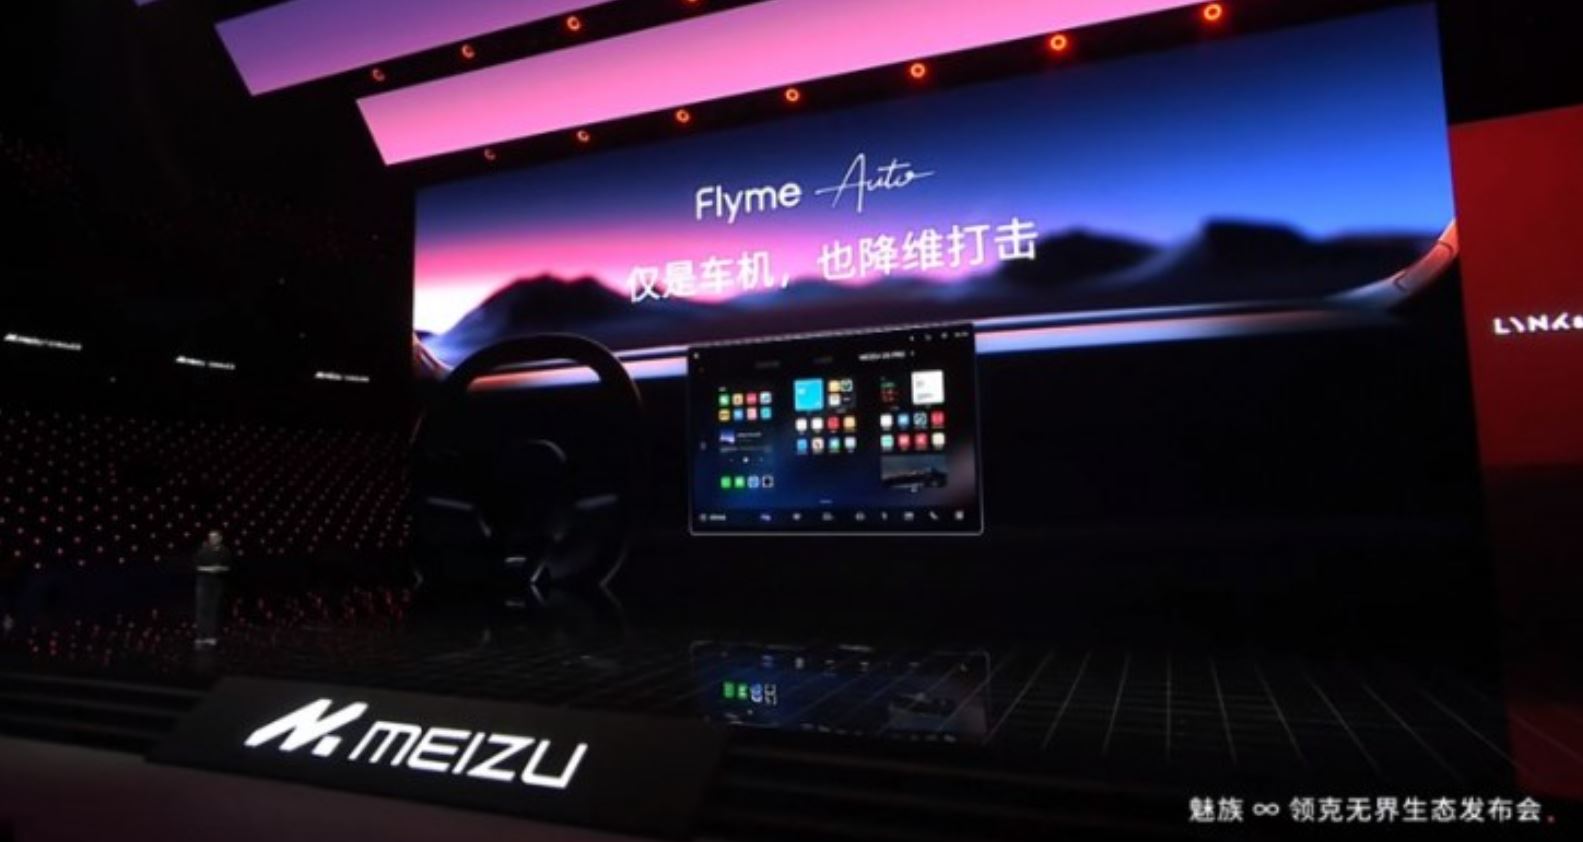 Meizu เปิดตัว ‘Flyme Auto’ ซอฟต์แวร์สำหรับระบบความบันเทิงในรถ (Car Infotainment)